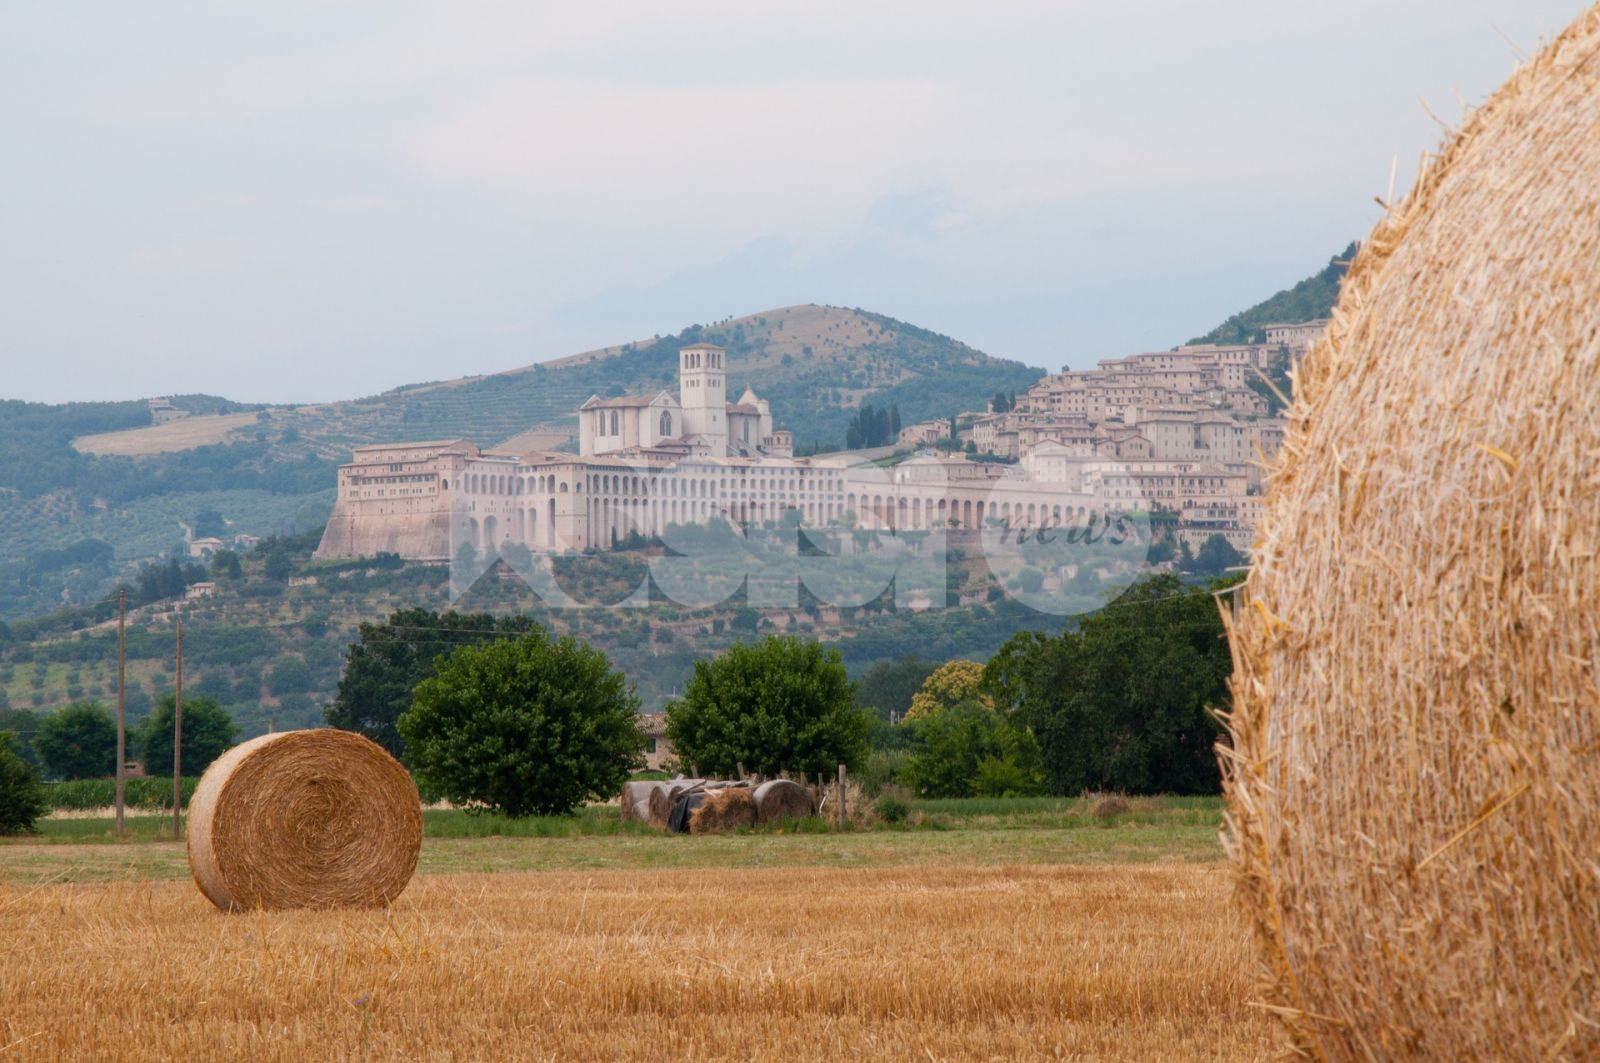 Eventi ad Assisi, Jacopo Pastorelli all'attacco: "Comune senza programmazione estiva"